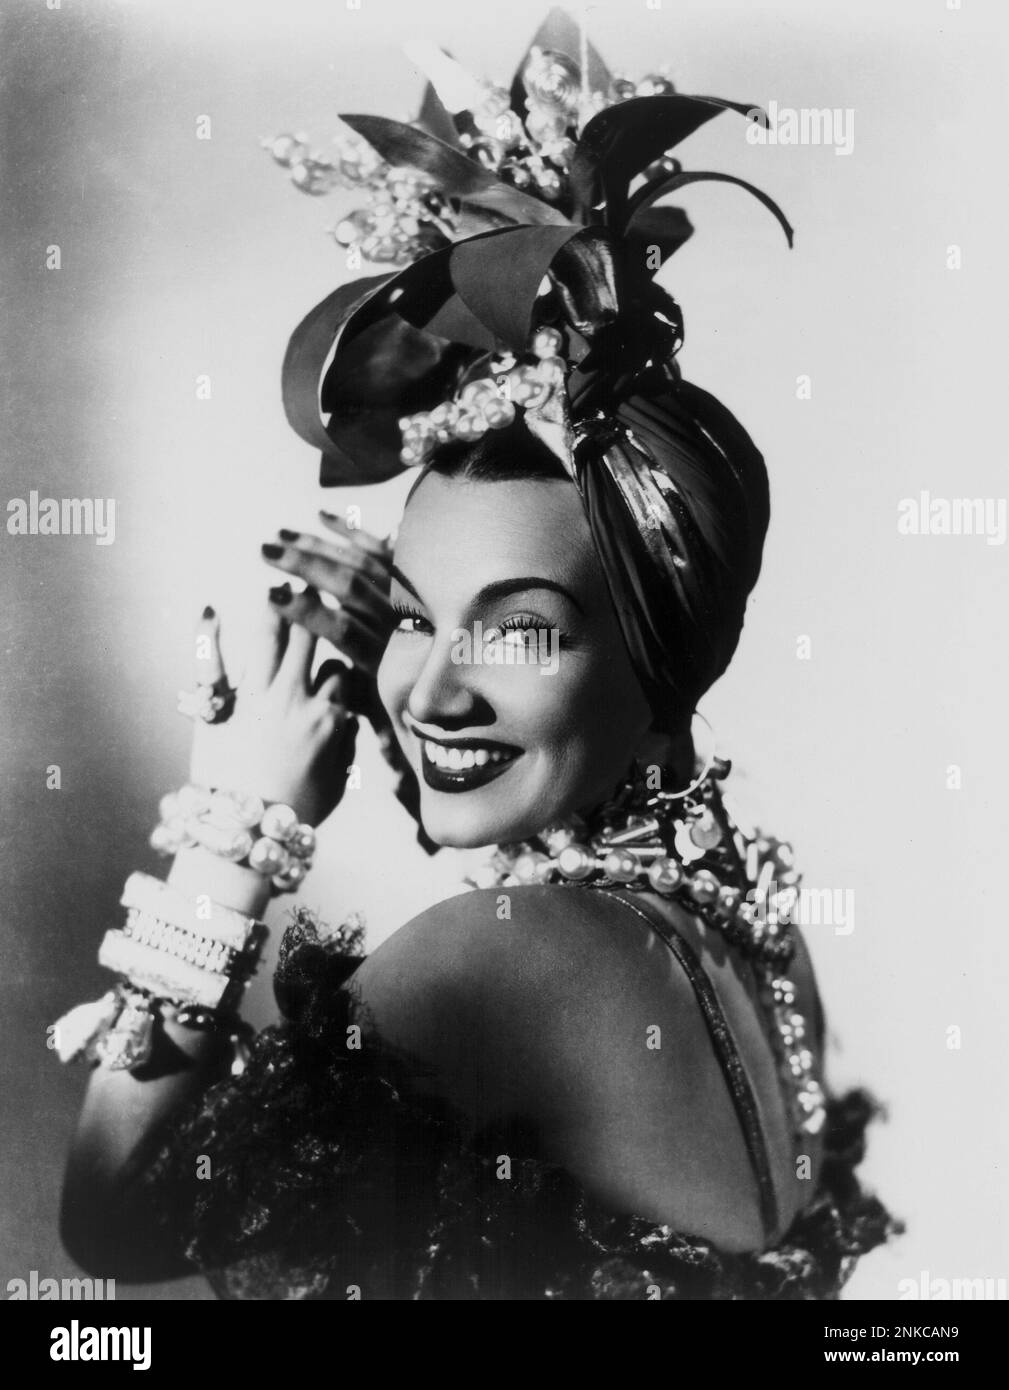 1941 : l'actrice et danseuse brésilienne CARMEN MIRANDA ( 1909 - 1955 ) dans CETTE NUIT À RIO ( una notte a Rio ) - CINÉMA - FILM - chapeau - cappello - bijoux - bijoux - gioiello - gioielli - perles - perla - perle - sourire - sorriso - bracelets - bracciale - bracciali - braccialetto - spalla - spalle - épaules - schiena - dos ---- Archivio GBB Banque D'Images